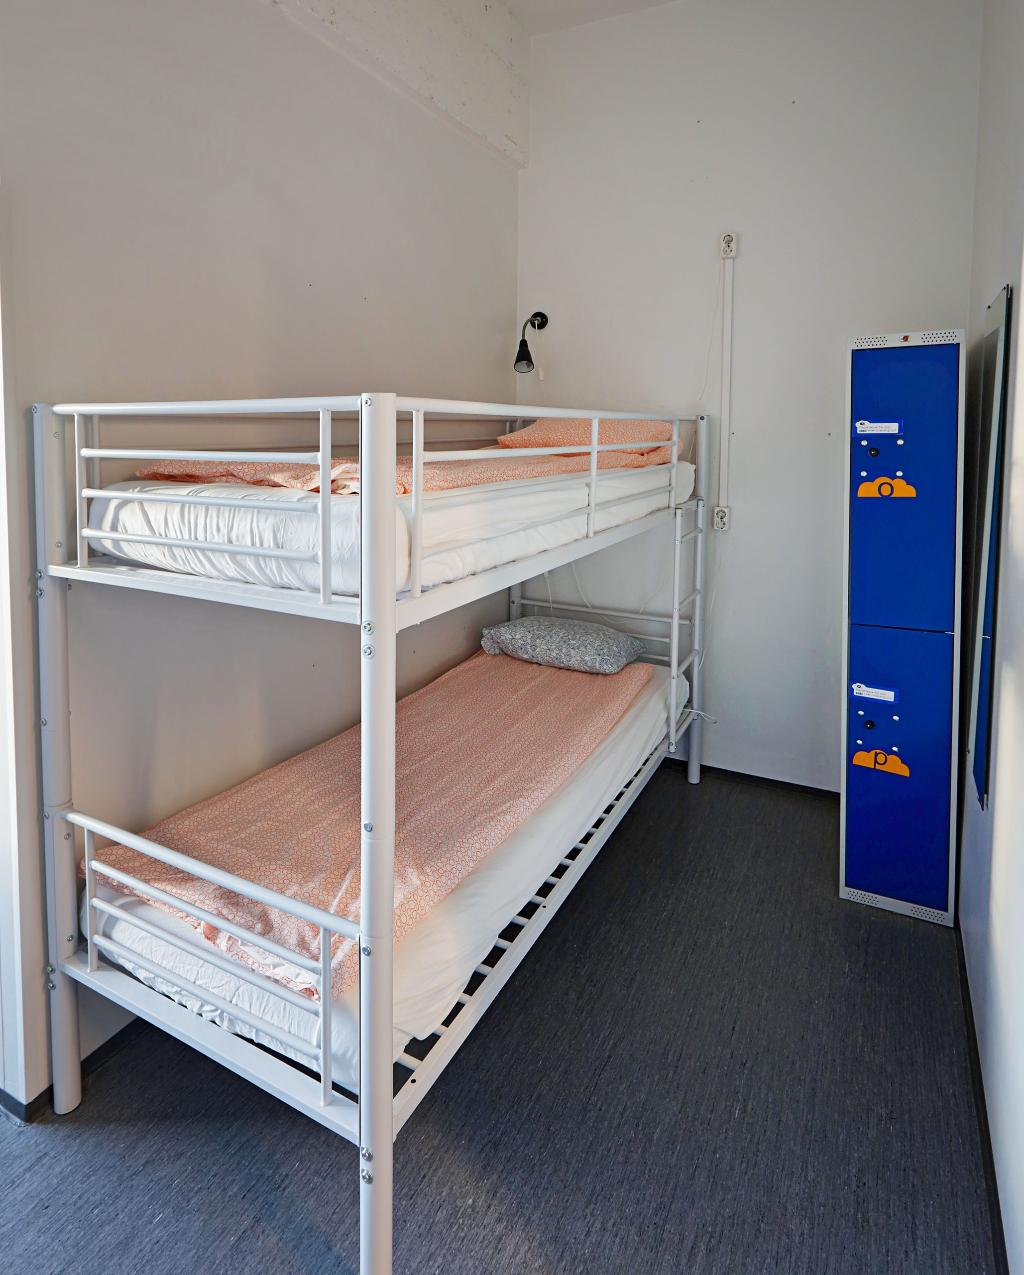 CheapSleep Hostel Helsinki